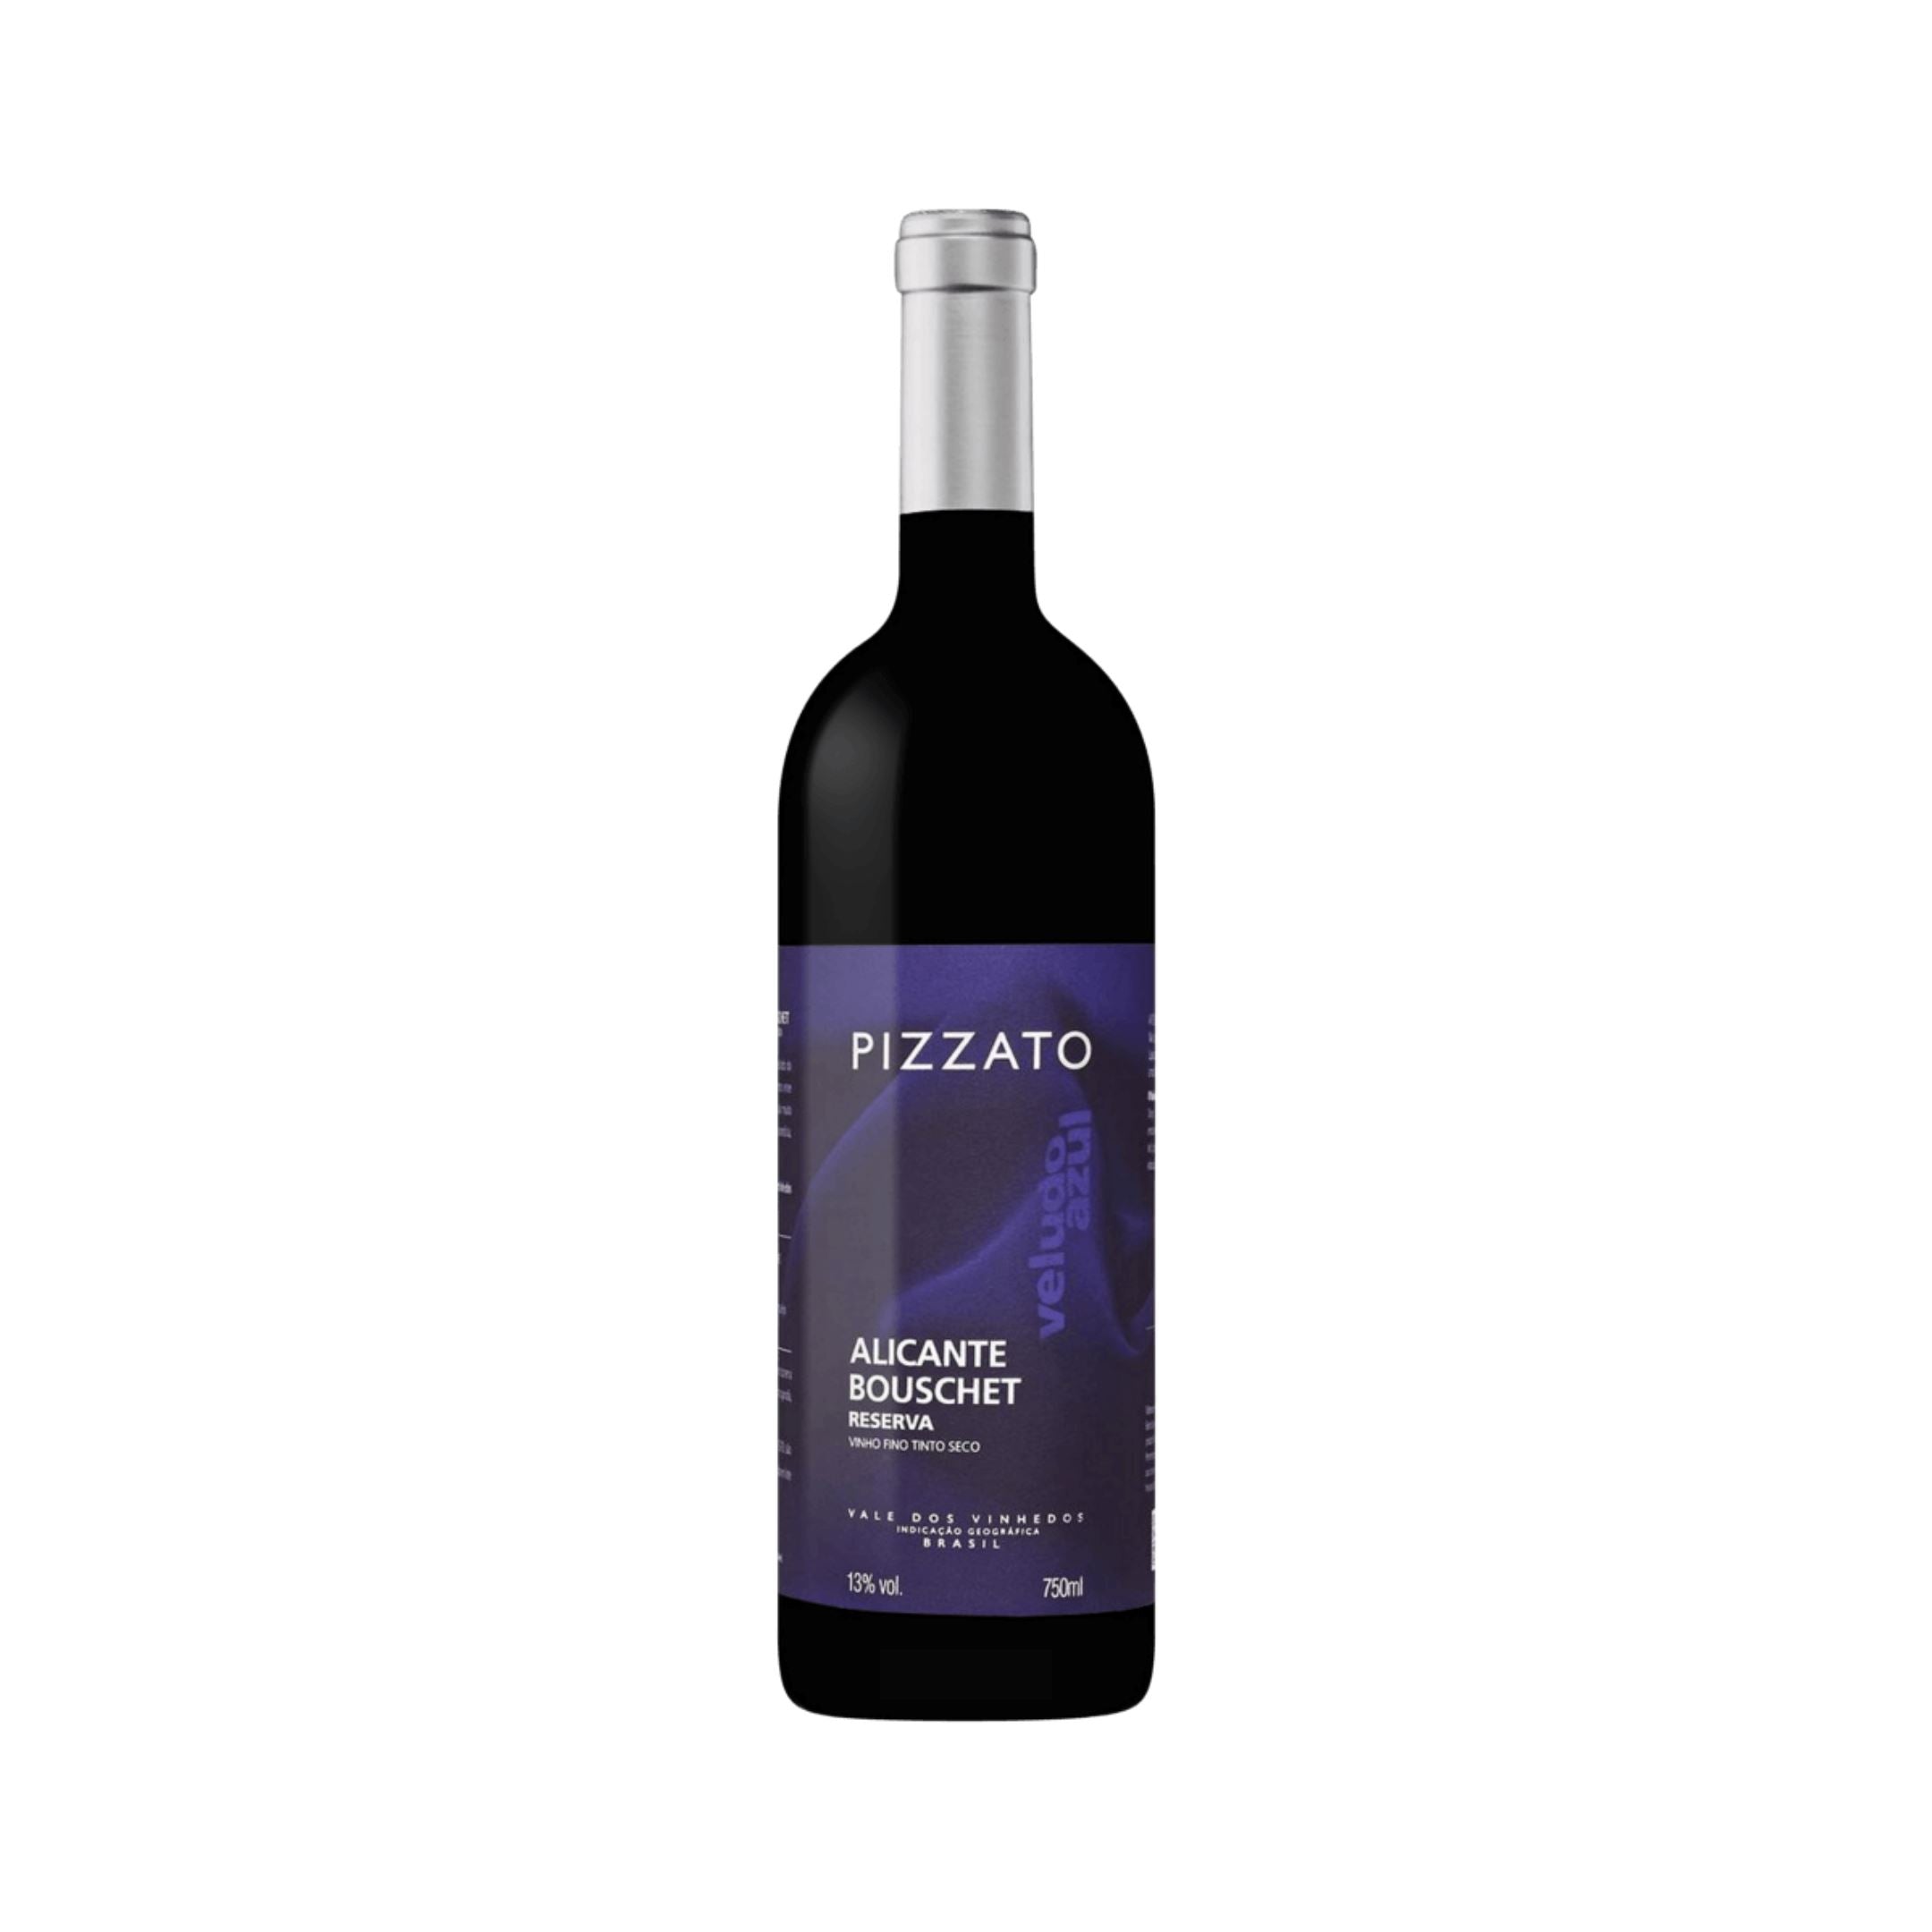 Pizzato Reserva Alicante Bouschet, Brazil The Online Wine Tasting Club 